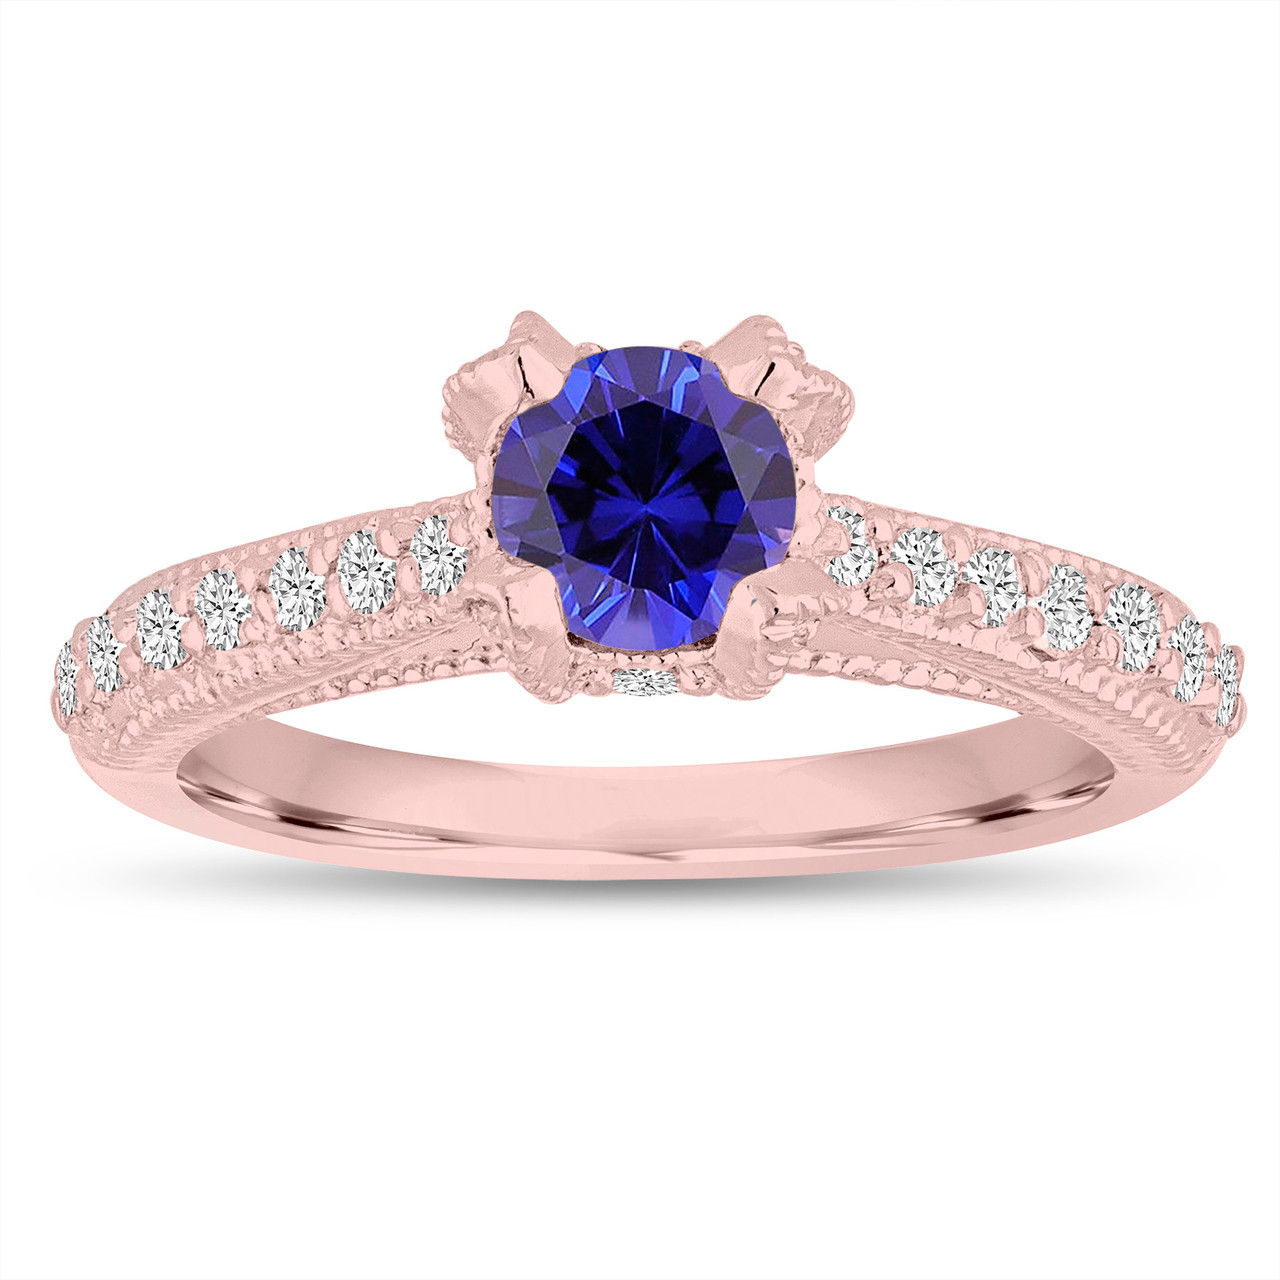 Blue Sapphire Engagement Ring 14K Rose Gold 0.82 Carat Unique Vintage ...